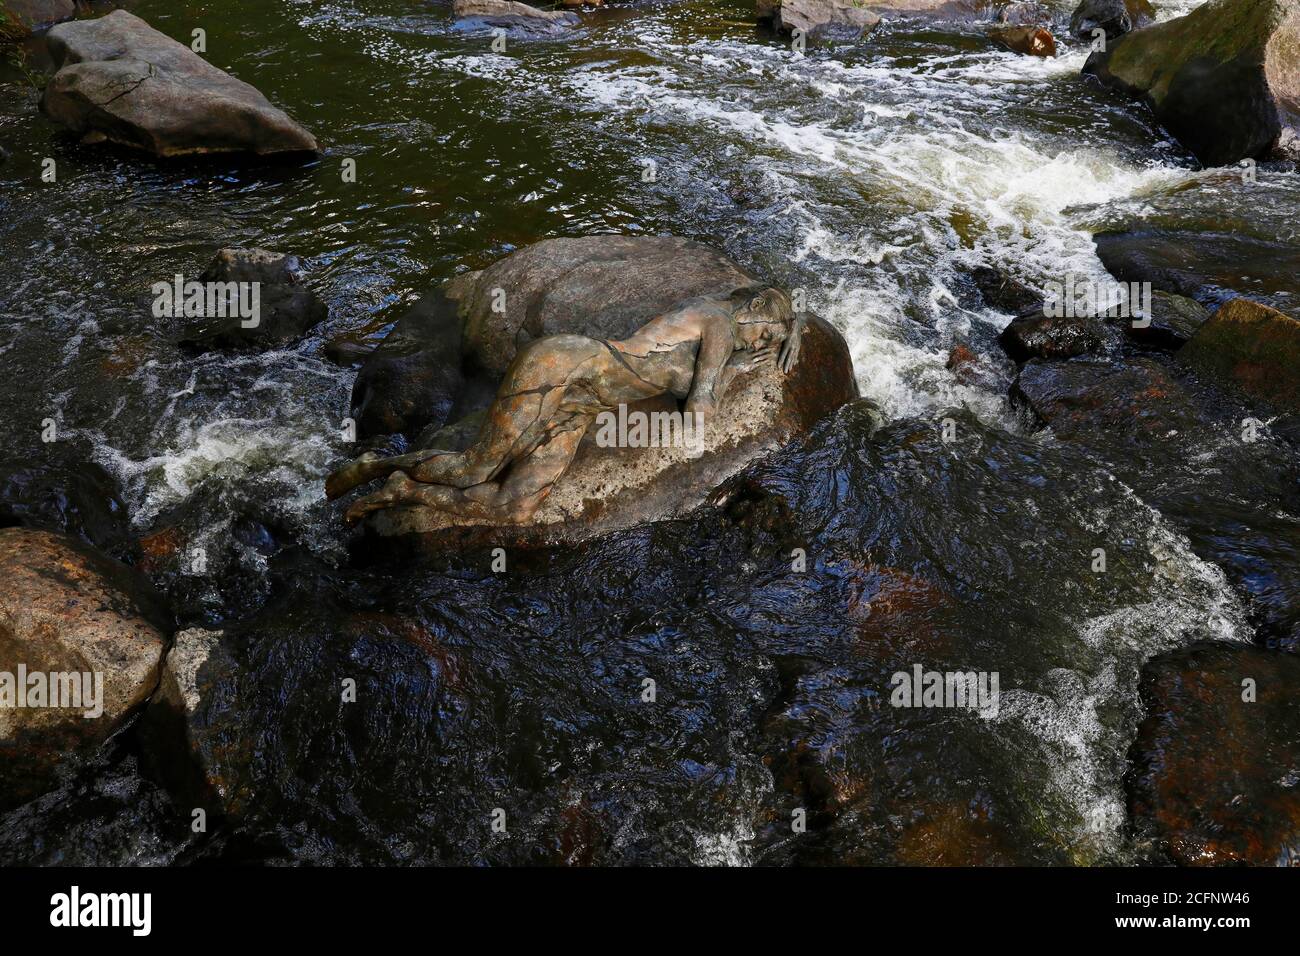 Arte della natura: Pietra nel fiume bodypainting e fotografare con il modello Daniela su una pietra nel fiume Chemnitz a Schweizerthal il 6 settembre 2020 - artista di bodypainting: Joerg Duesterwald Foto Stock